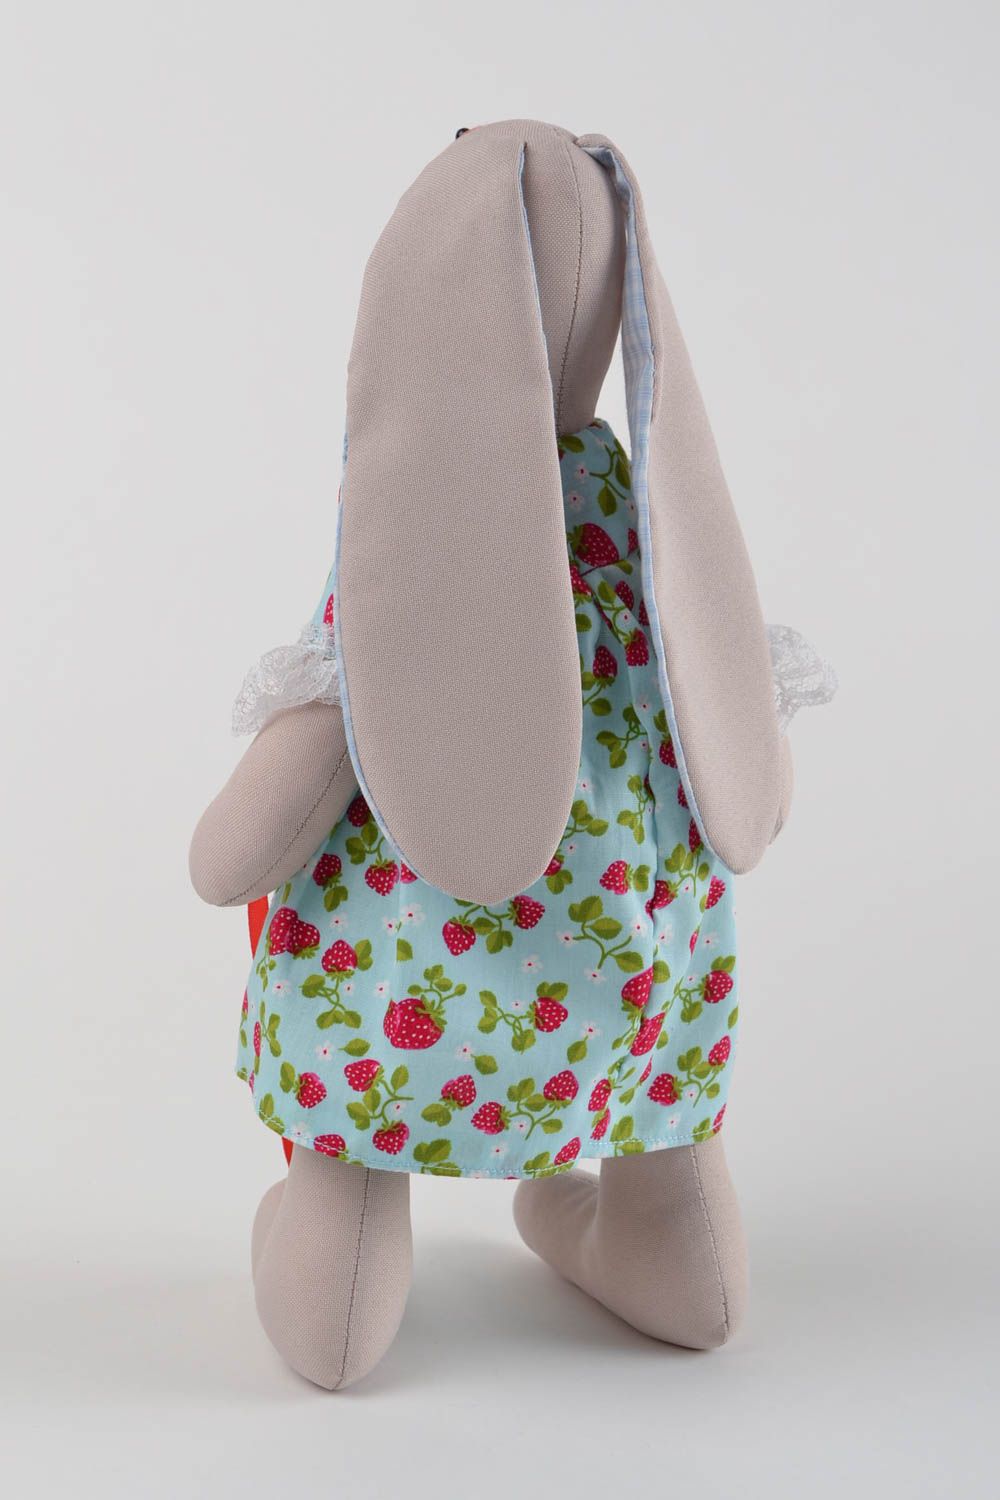 Мягкий зайчик в платьице хенд мейд интерьерная игрушка для декора подарок фото 5